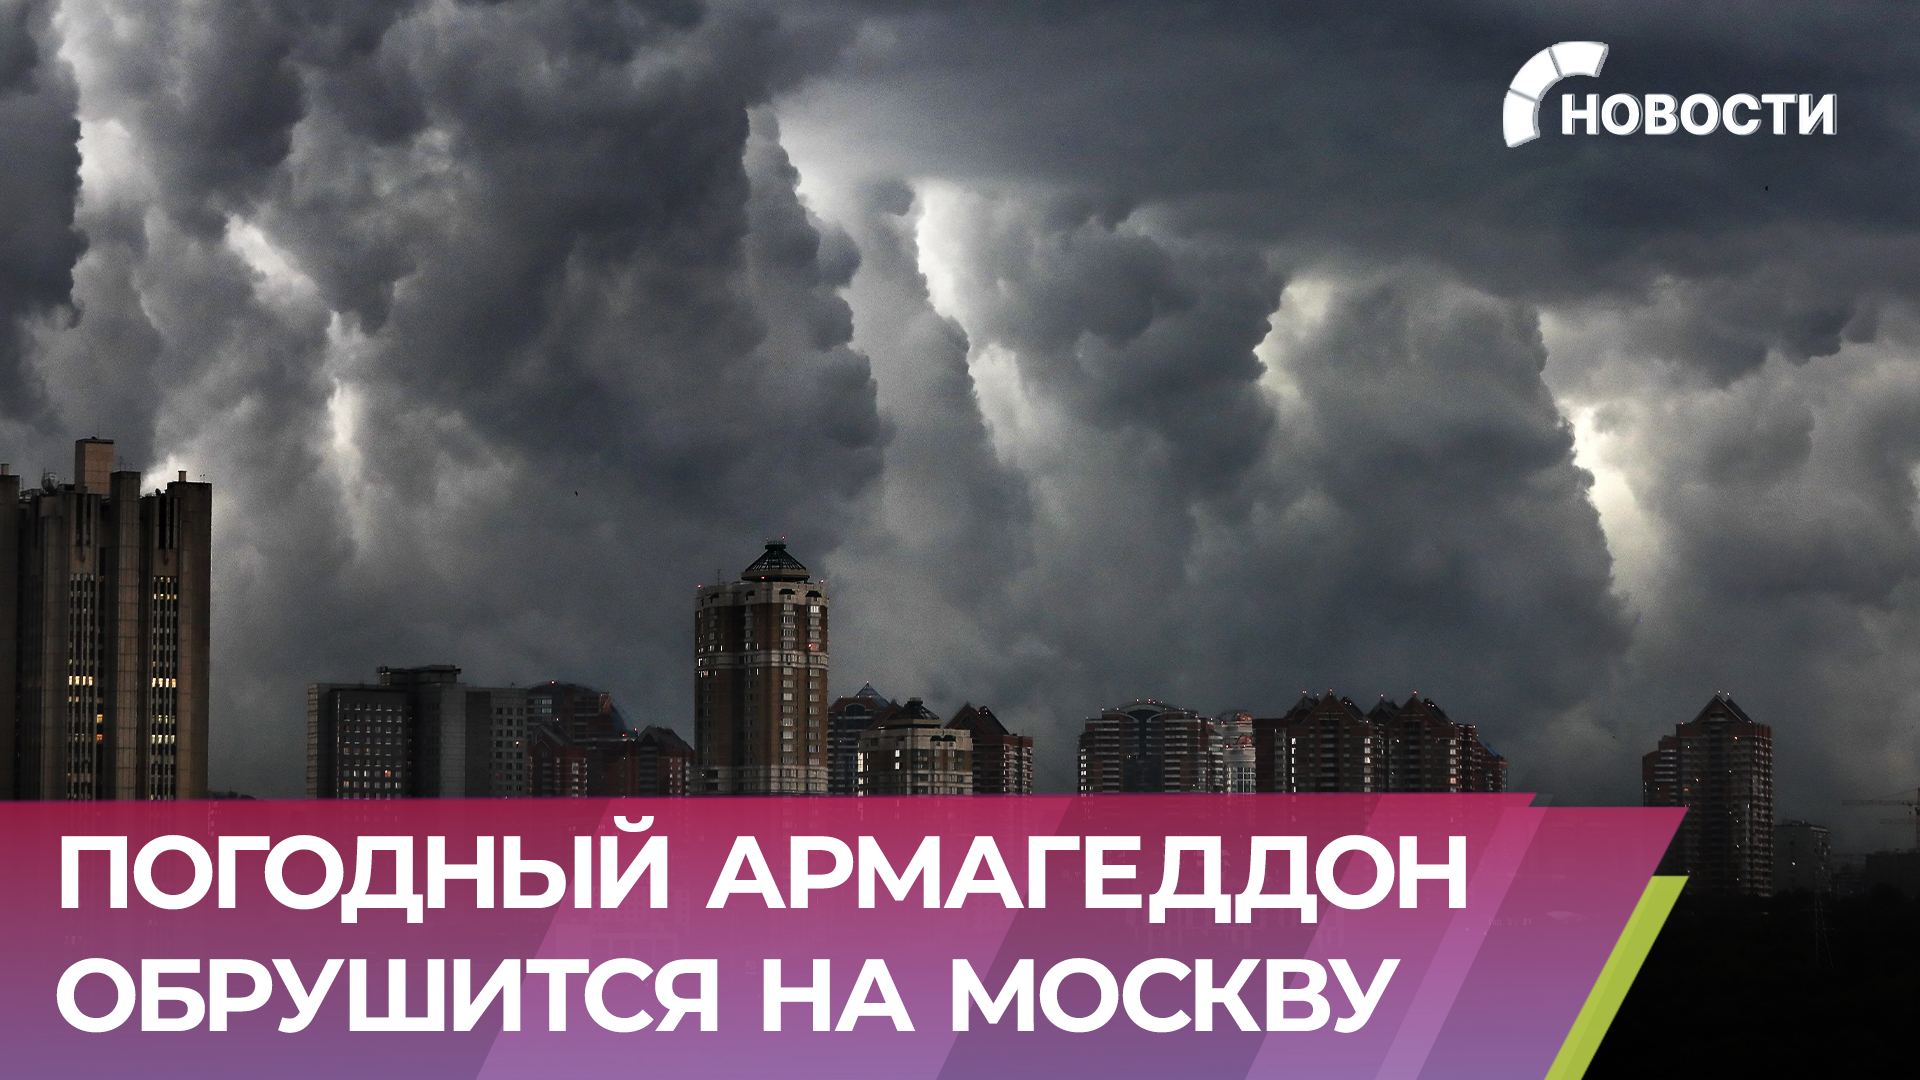 Погодный армагеддон надвигается на Москву. Сверхмощный ветер с дождем обрушится на столицу уже скоро